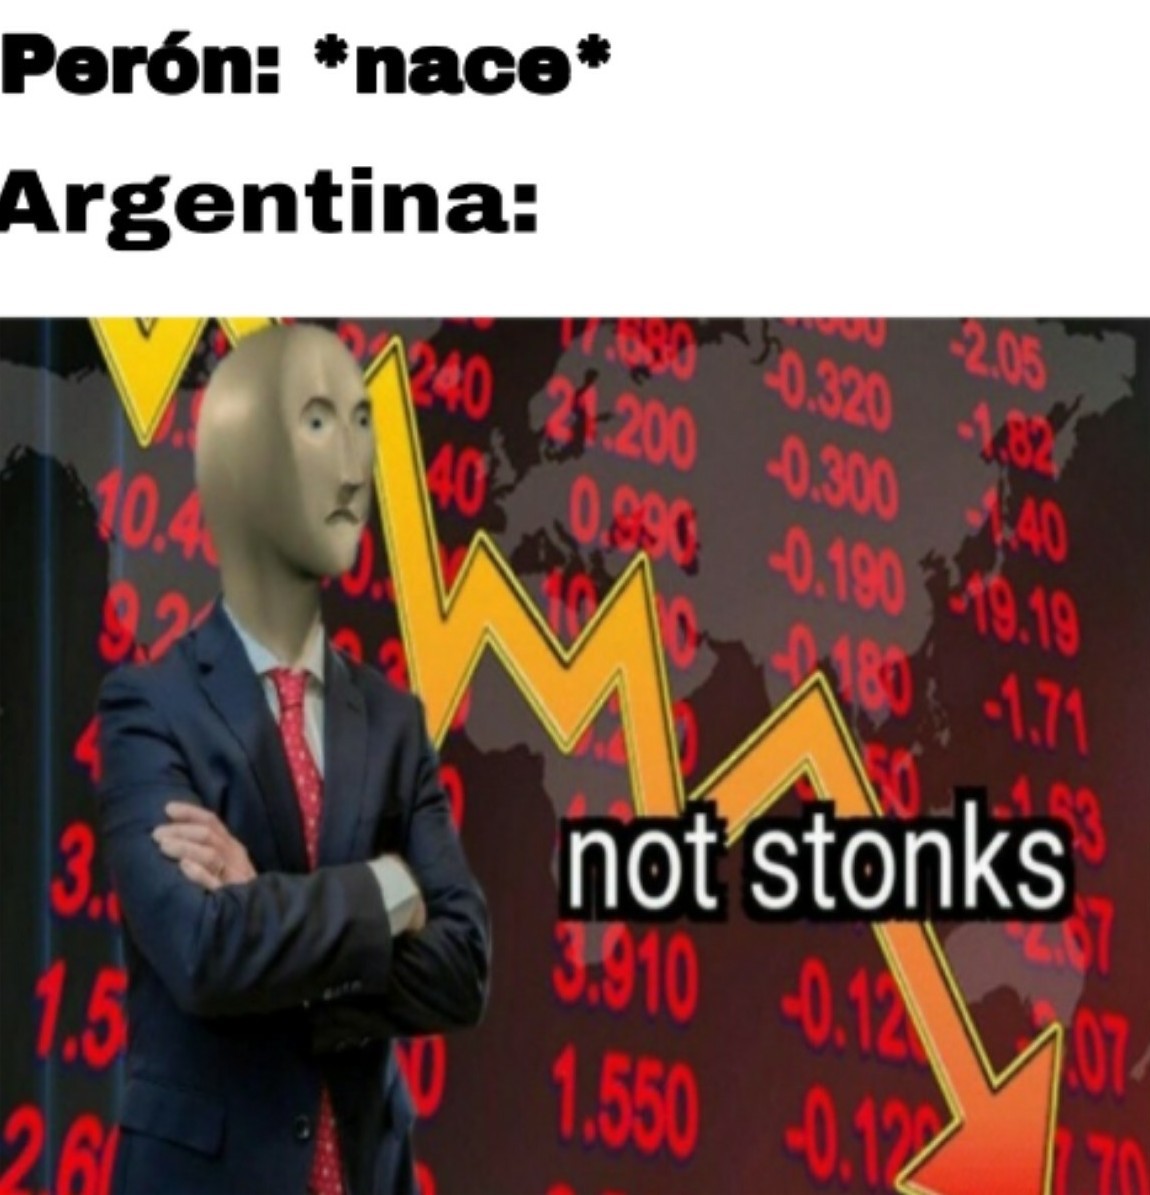 Perón y todos su séquito destrozando argentina desde 1945 - meme